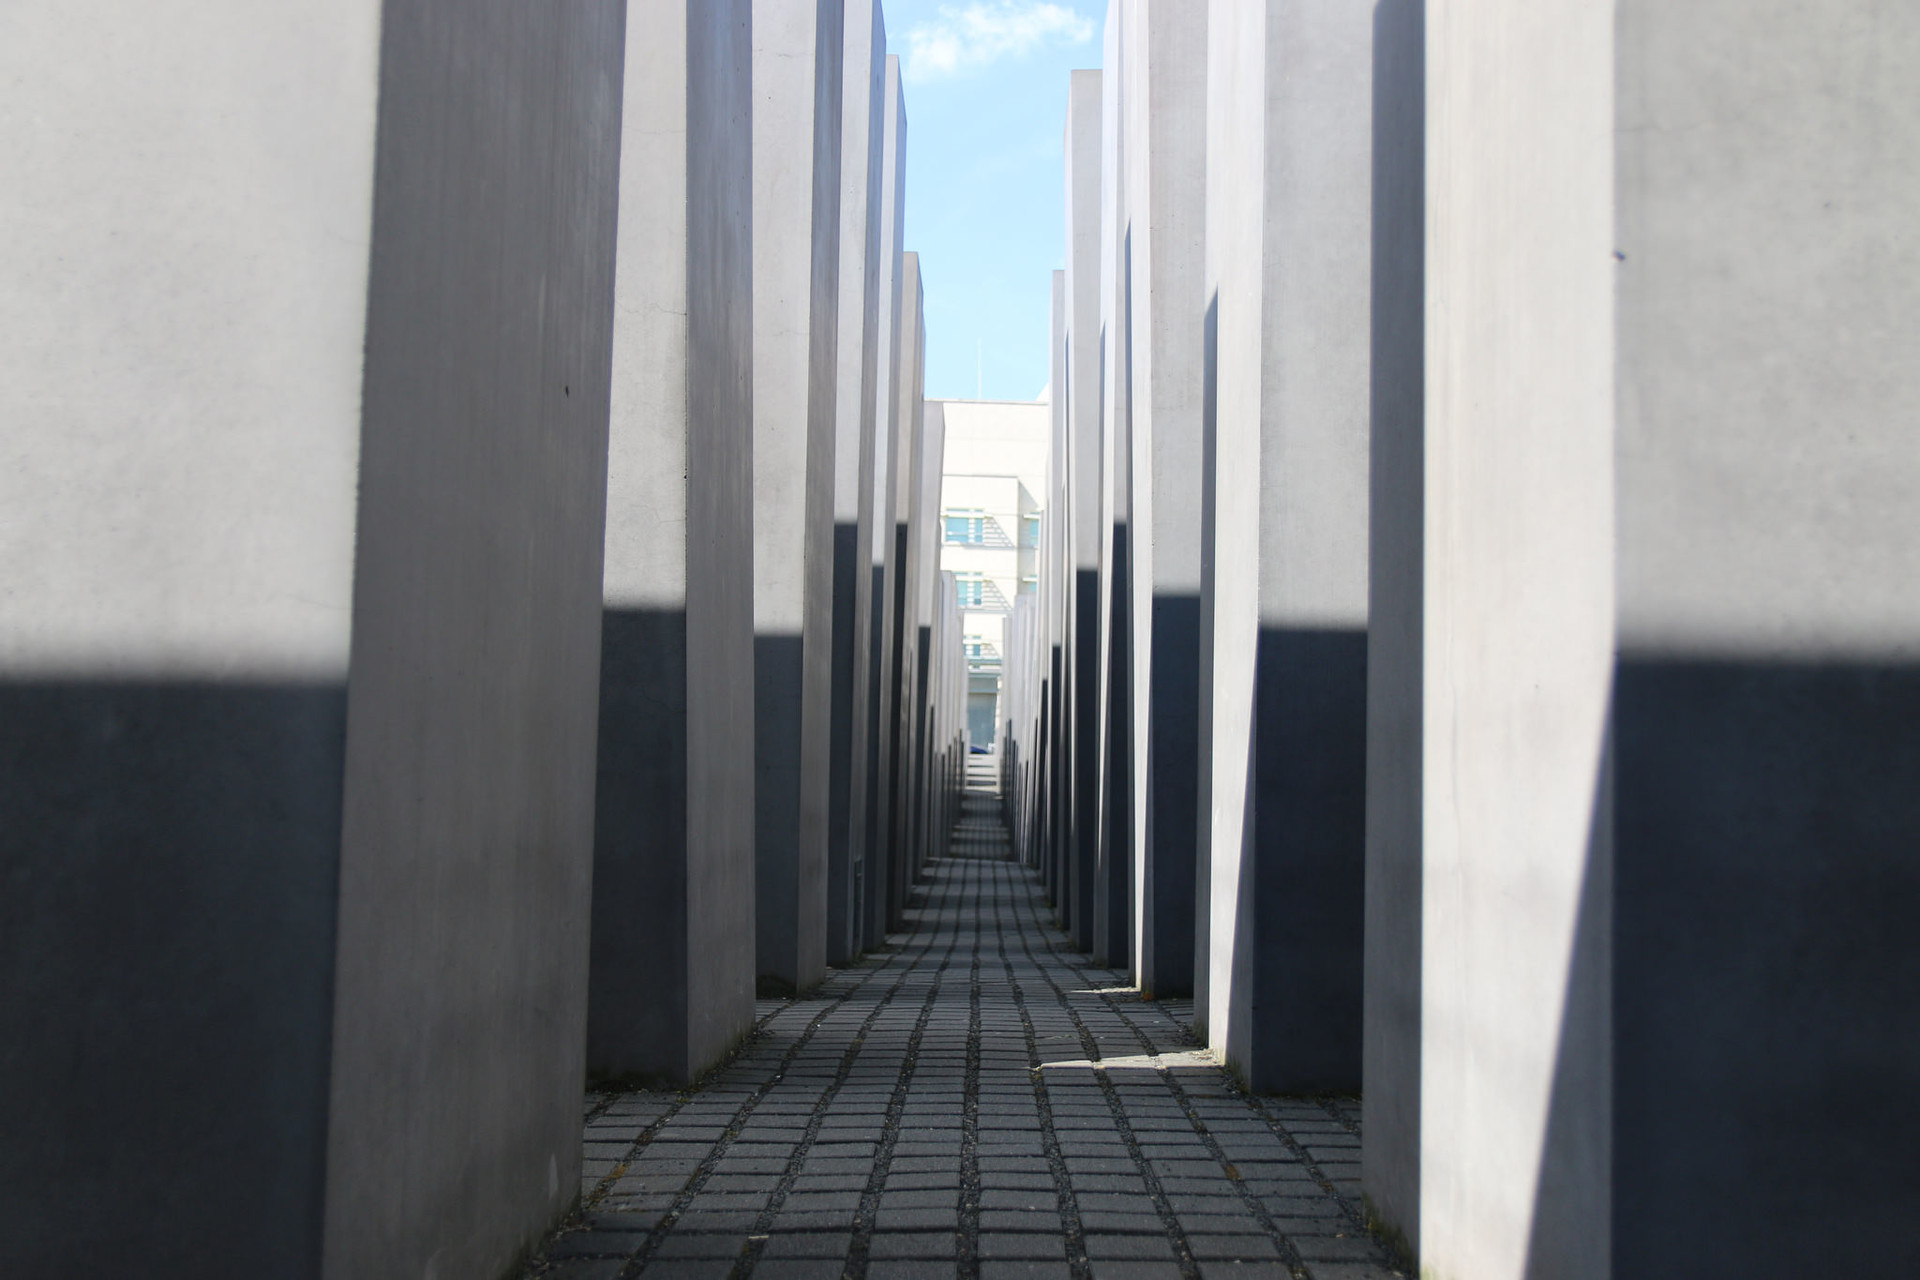 lost-holocaust-jews-memorial-berlin-f99e